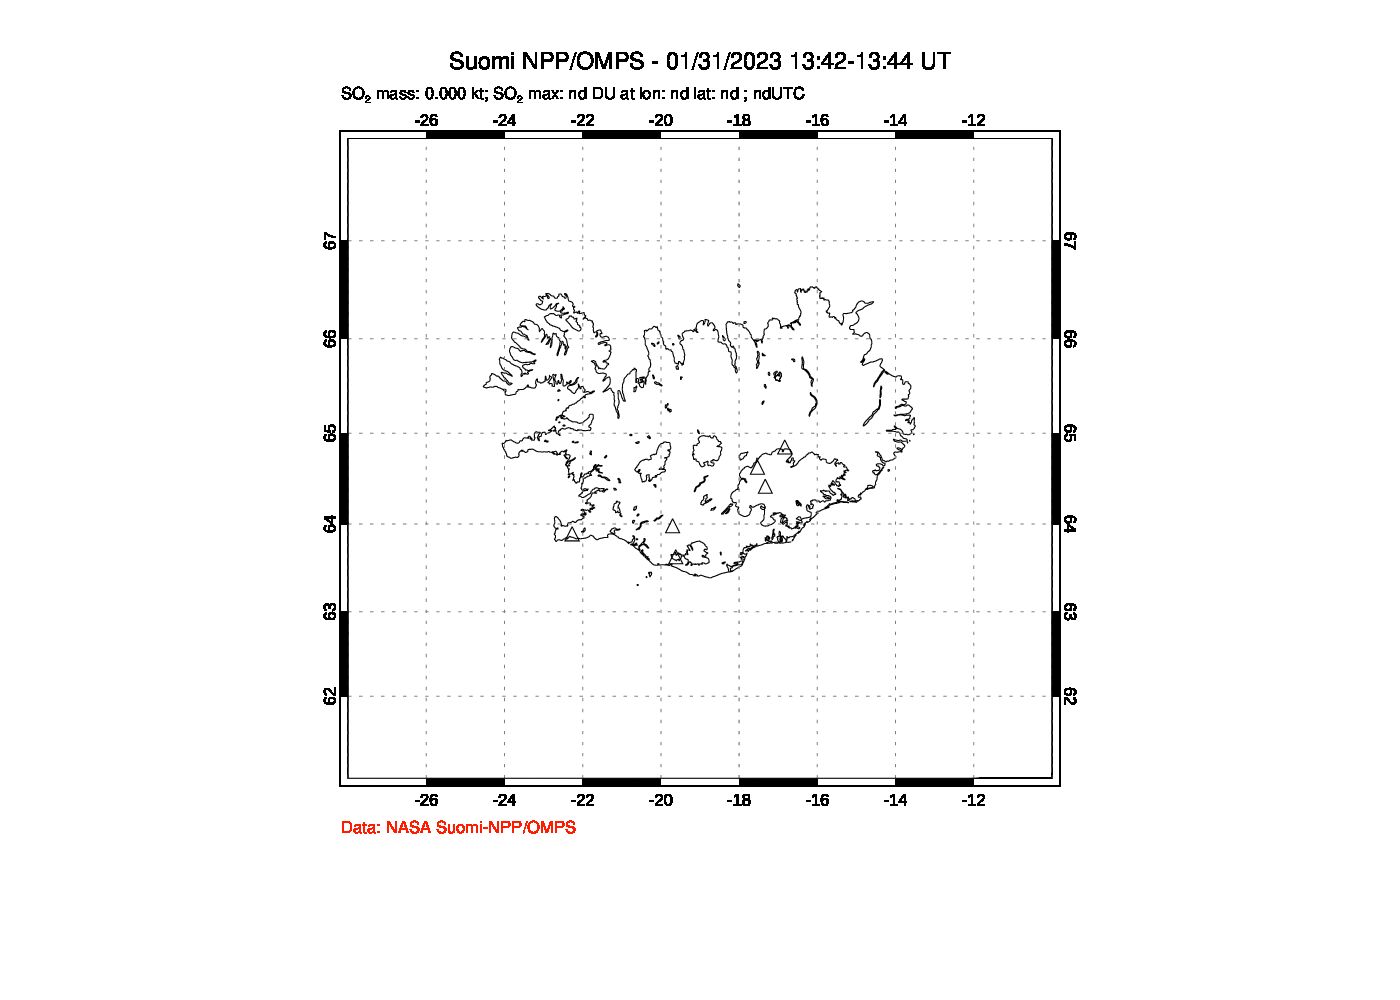 A sulfur dioxide image over Iceland on Jan 31, 2023.